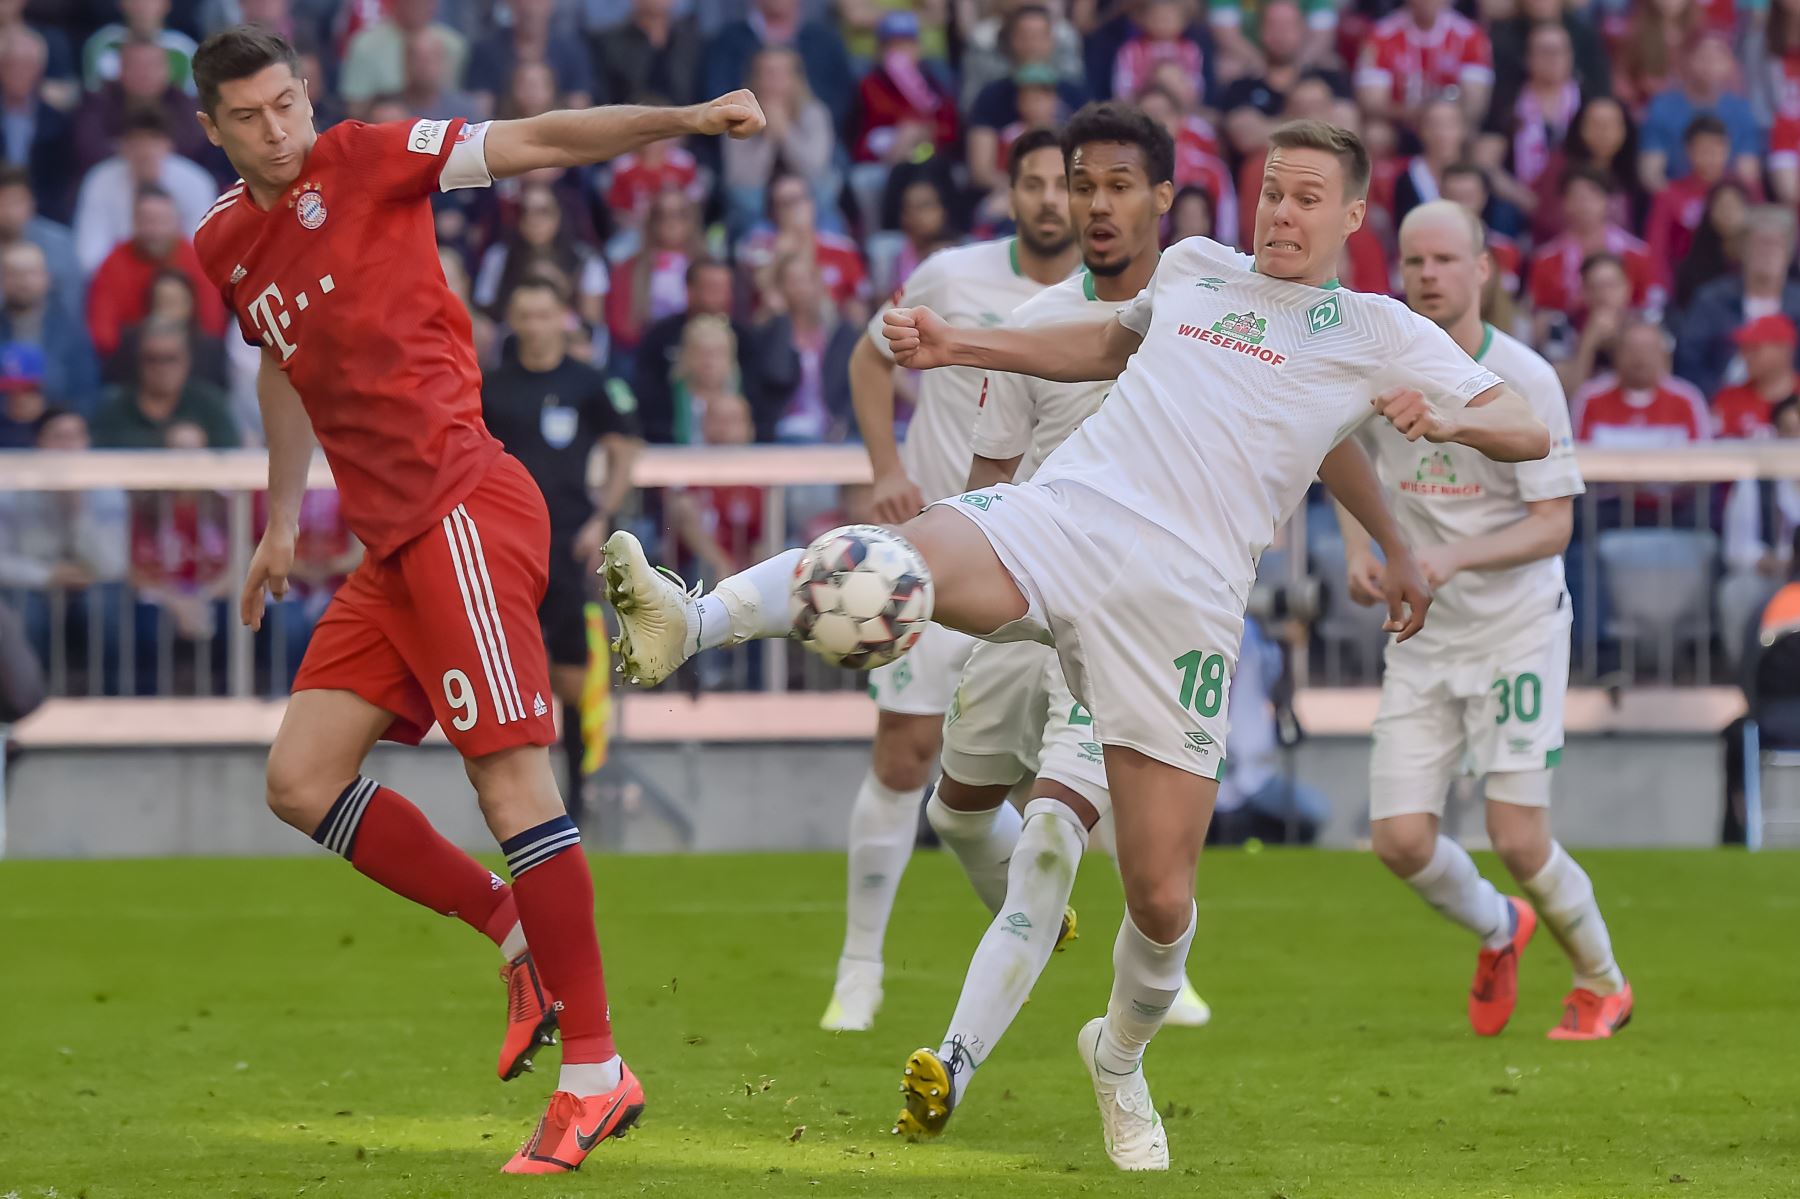 El delantero polaco del Bayern Munich, Robert Lewandowski (L), y el defensa del Bremen, Niklas Moisander, compiten por la pelota durante el partido de fútbol de la Bundesliga de la primera división alemana FC Bayern Munich vs SV Werder Bremen.Foto:AFP